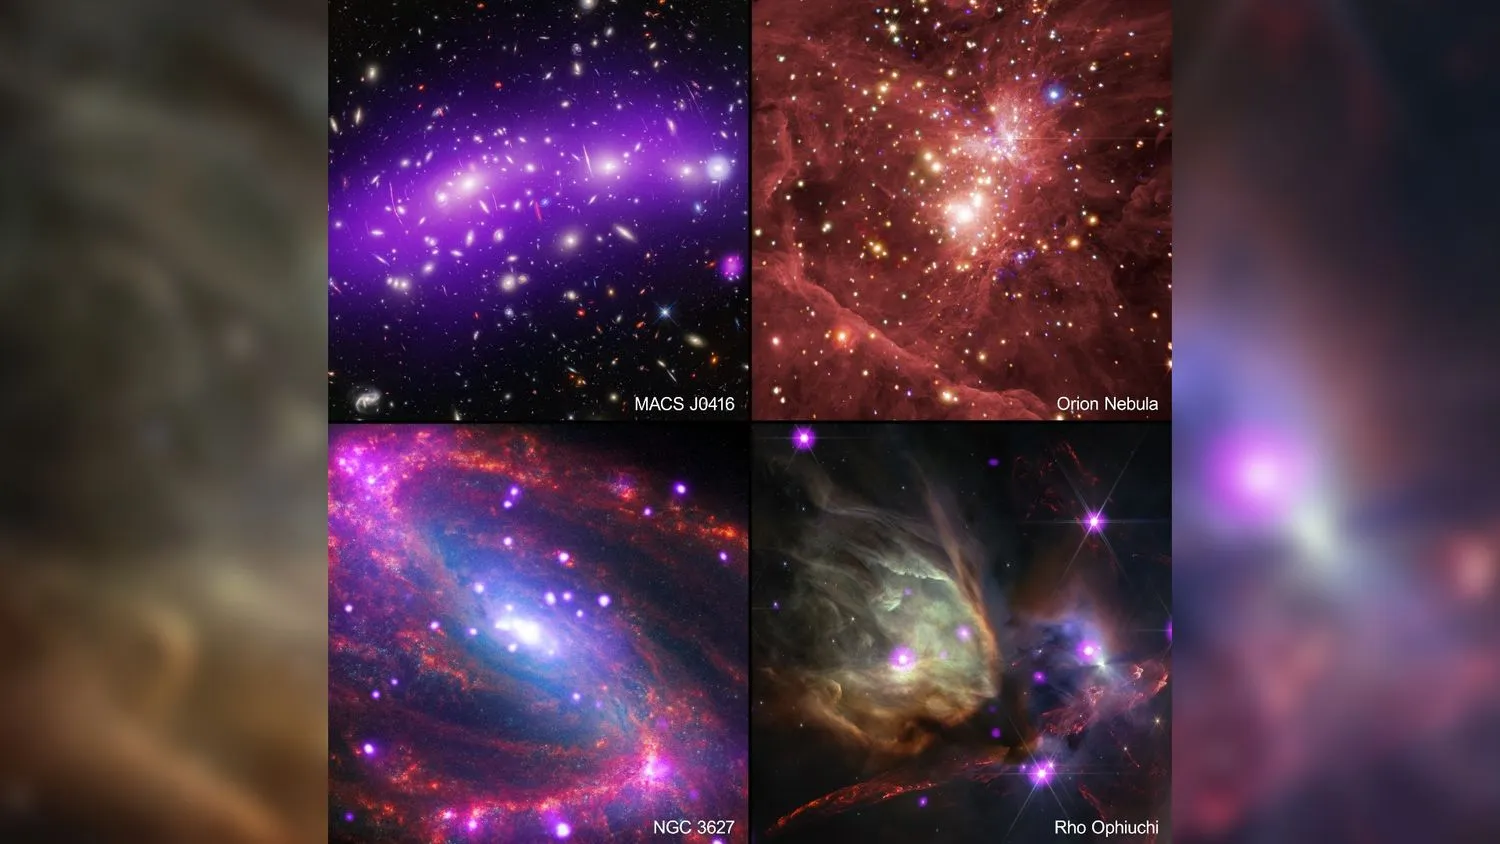 Mehr über den Artikel erfahren Kleine Reise! Bereisen Sie das Universum mit diesen großartigen Bildern des Chandra-Röntgenteleskops der NASA